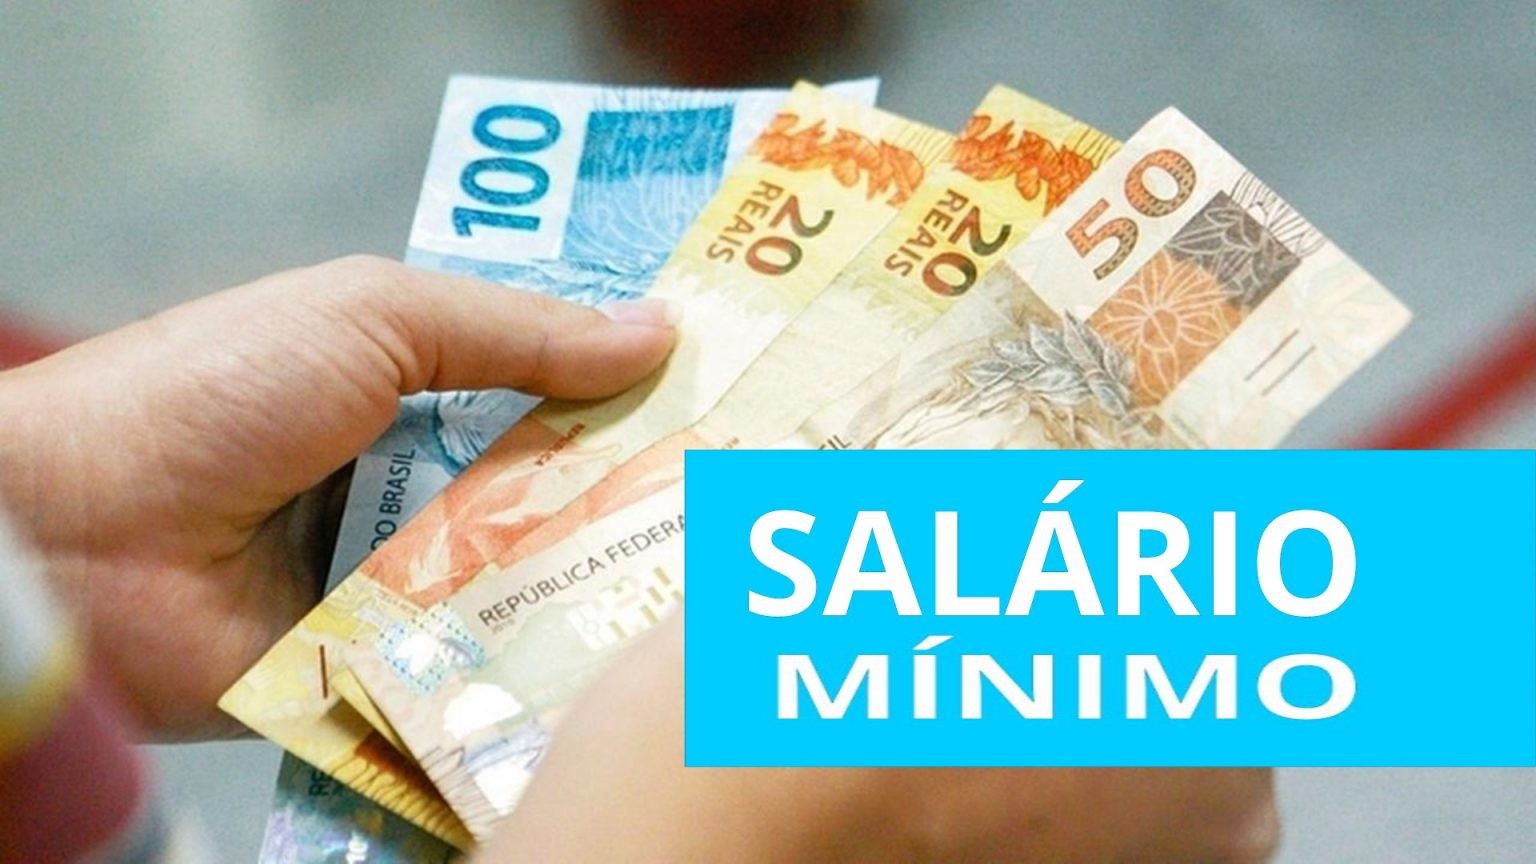 Presidente Lula decidiu que o salário mínimo sairá dos atuais R$ 1.302 para R$ 1.320 a partir de maio